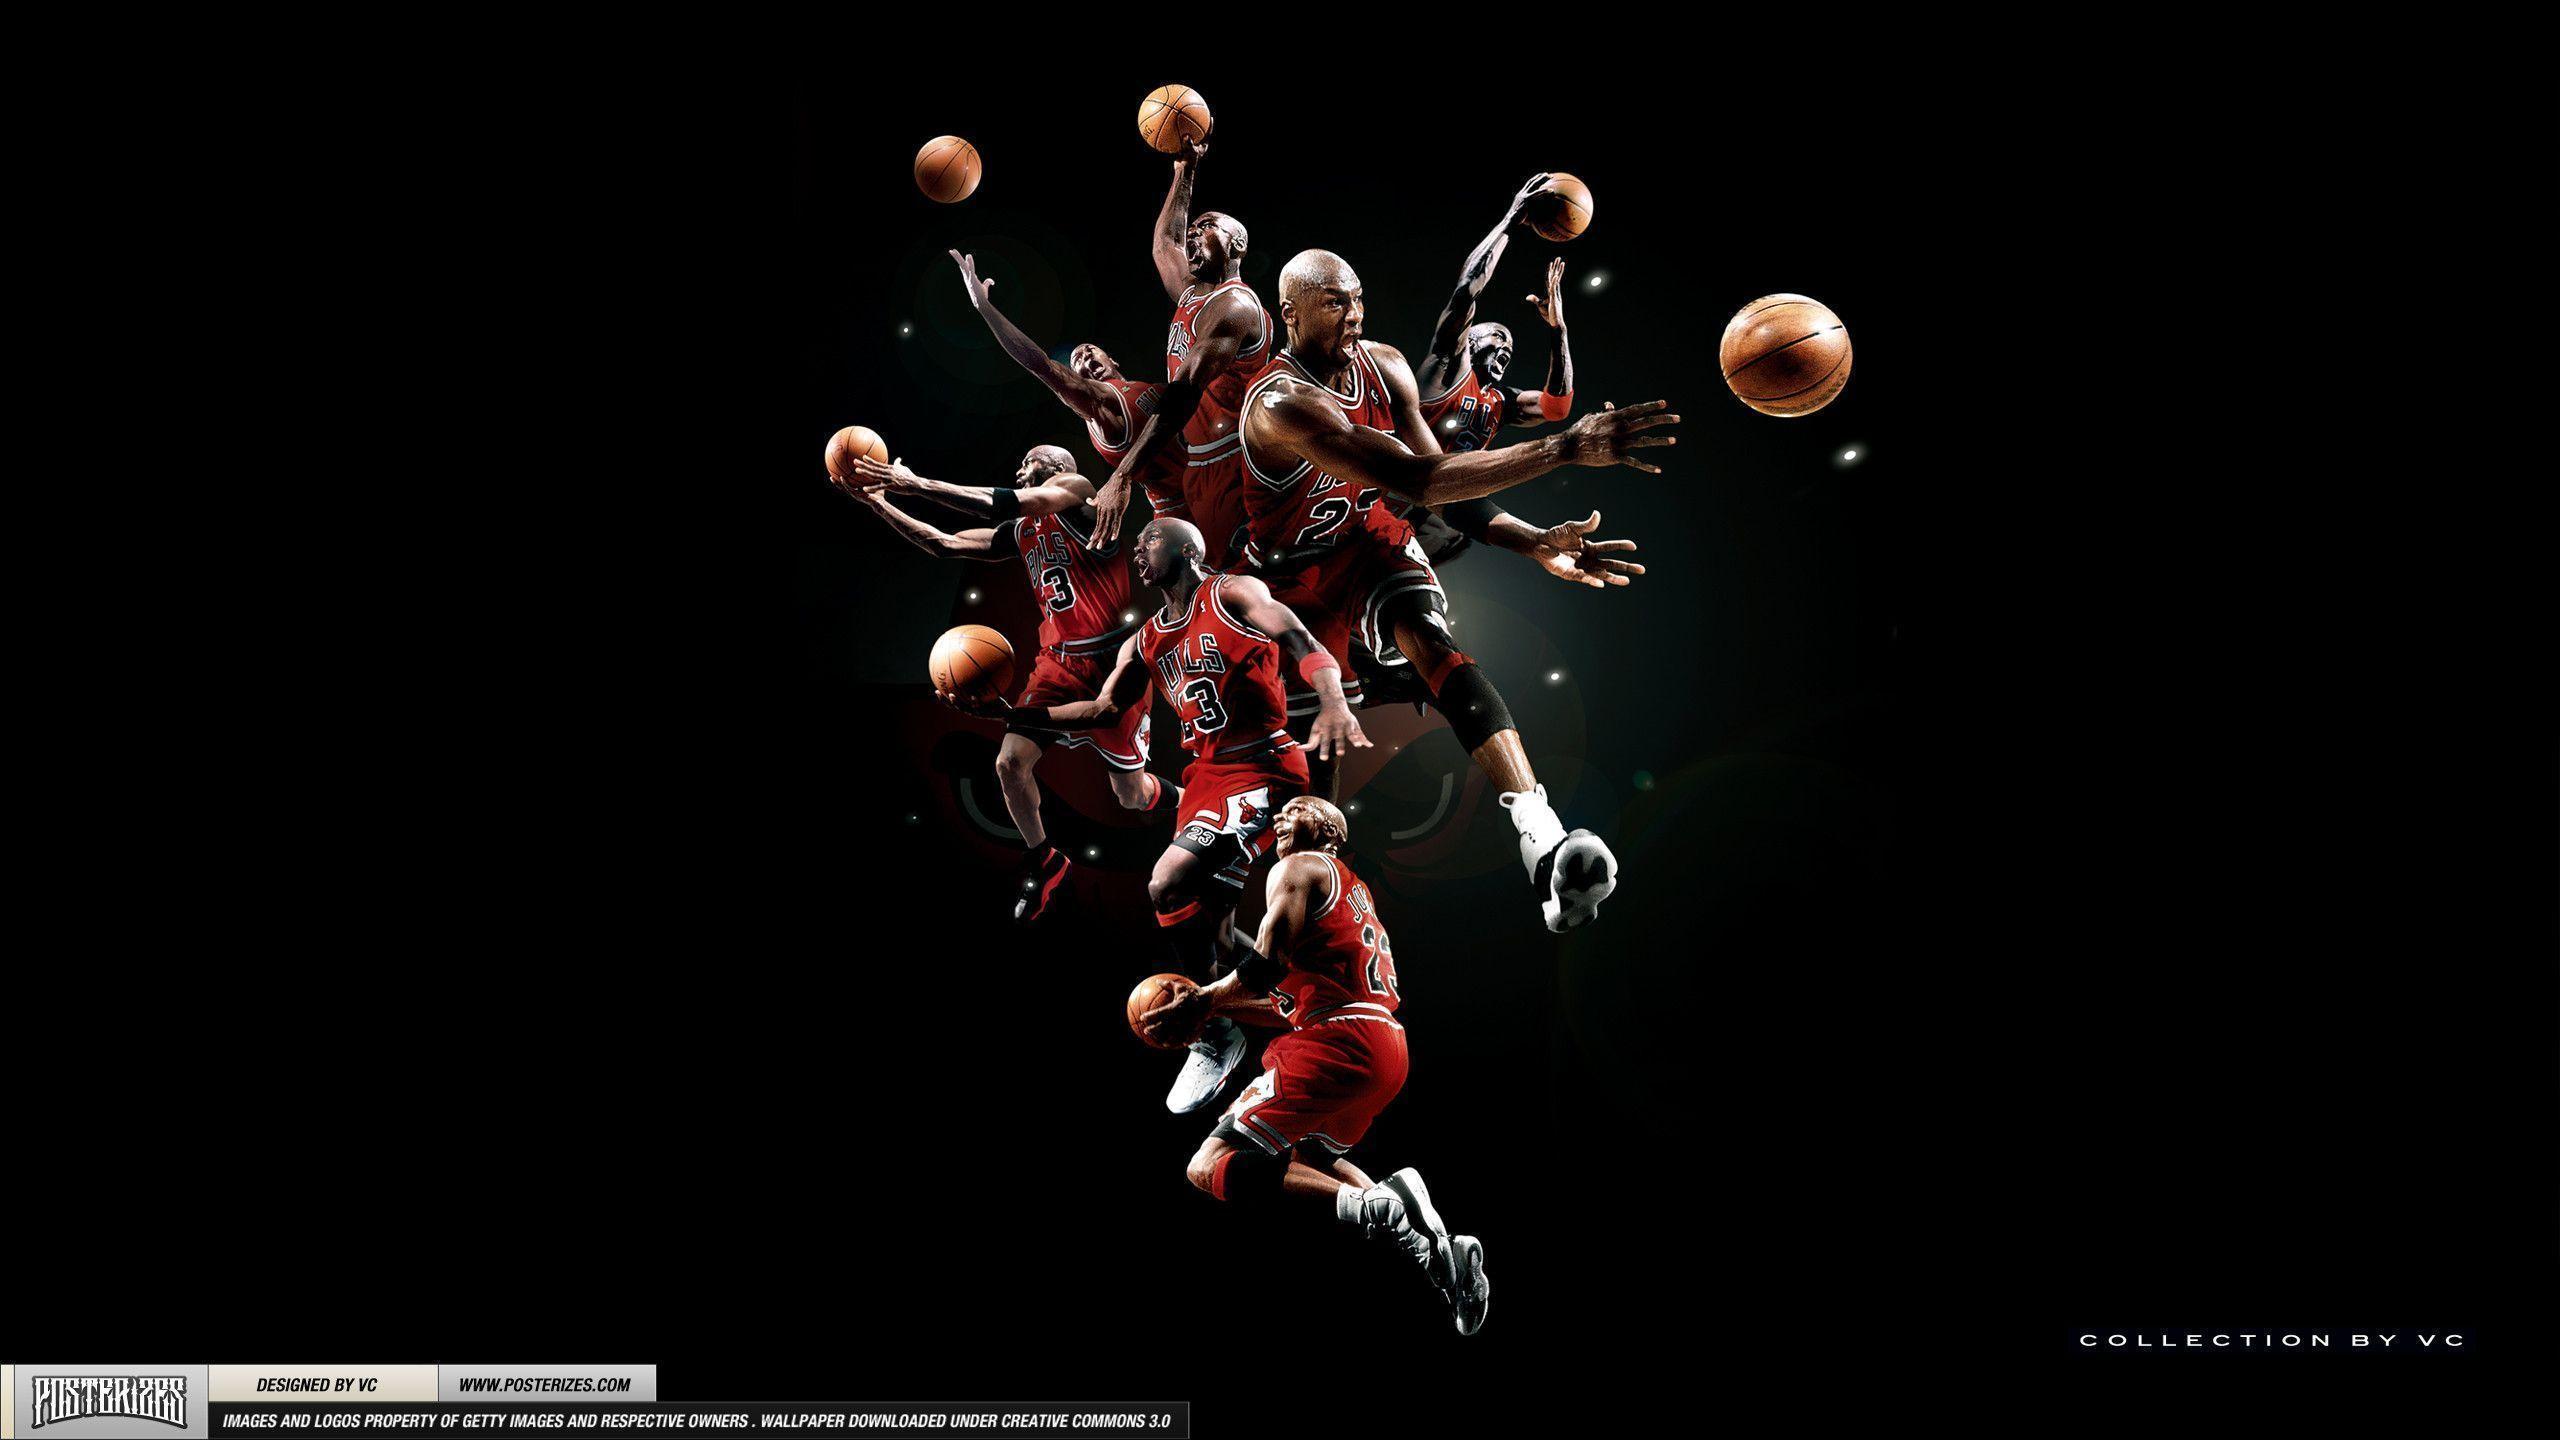 Michael Jordan Chicago Bulls Wallpapers Wallpaper 1280×1024